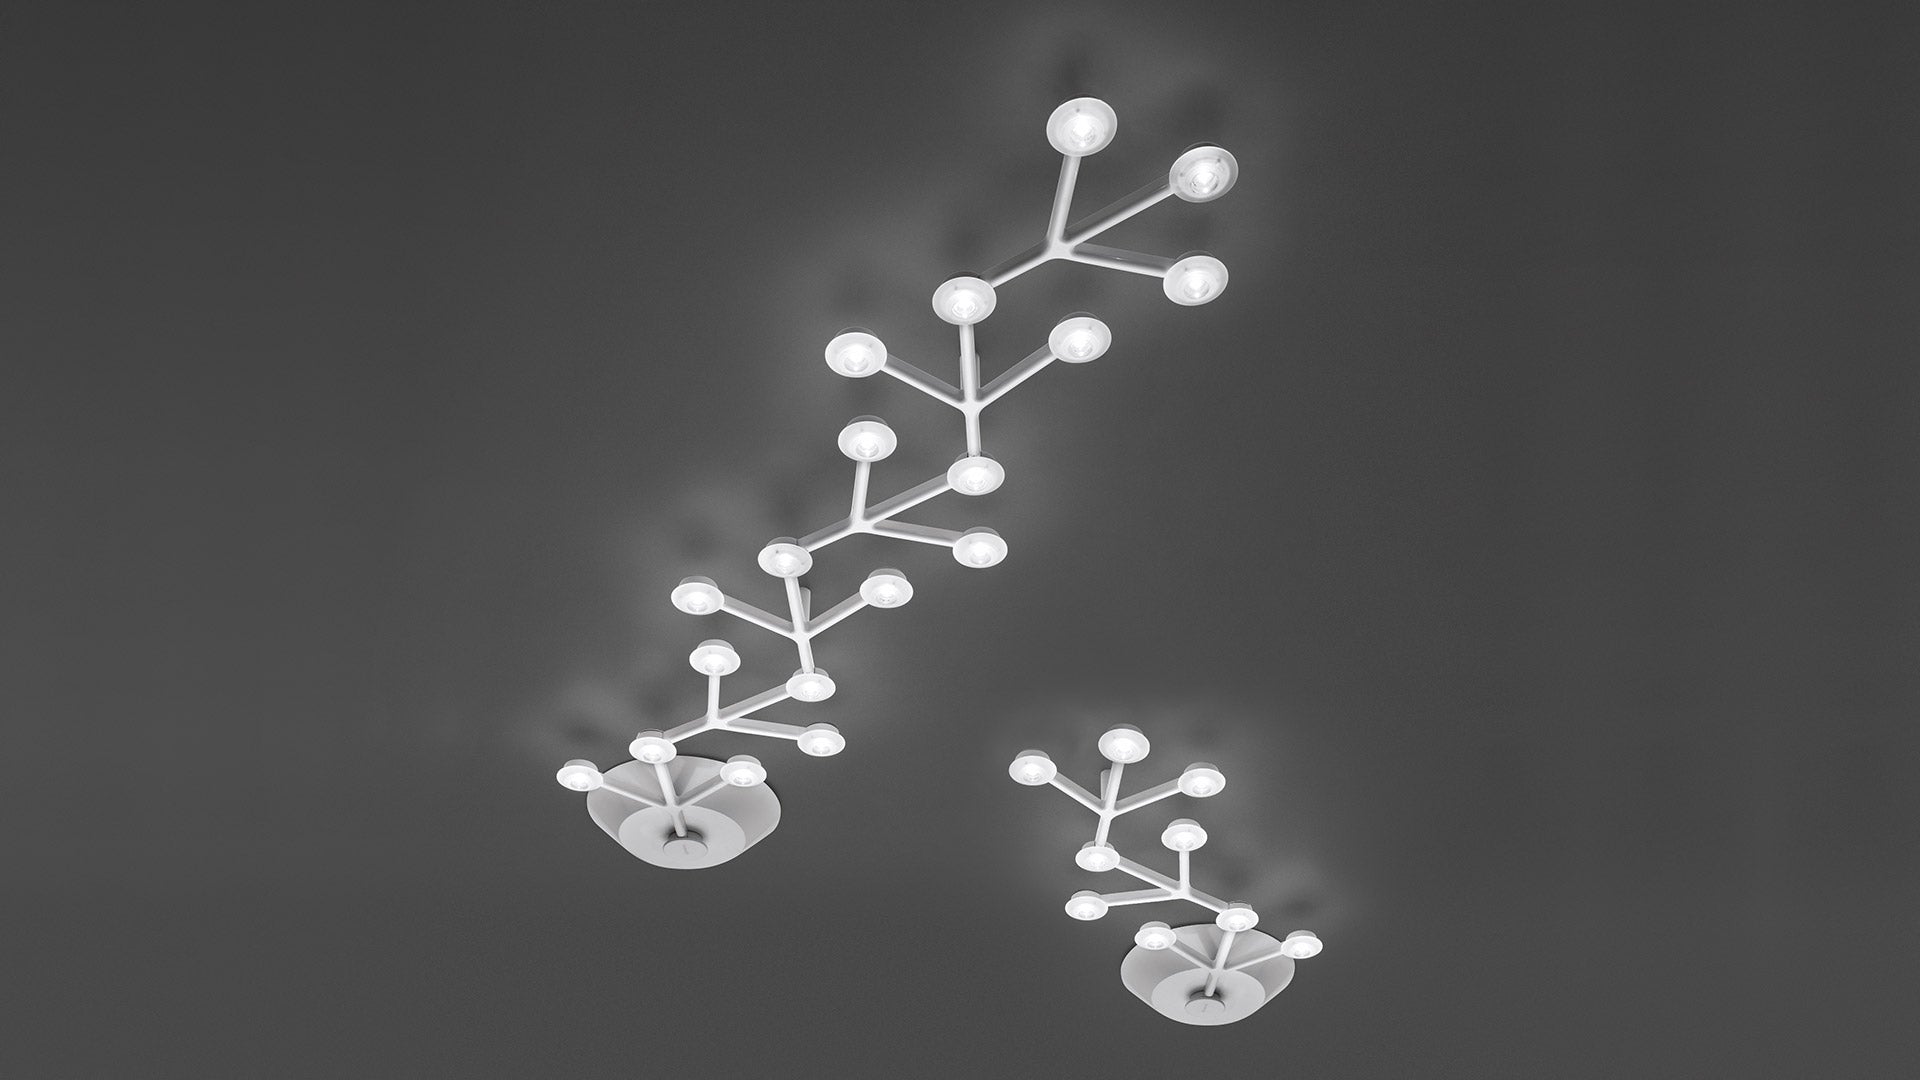 Lampadaire LED Plano 7000lm aluminium - Découvrez Luminaires d